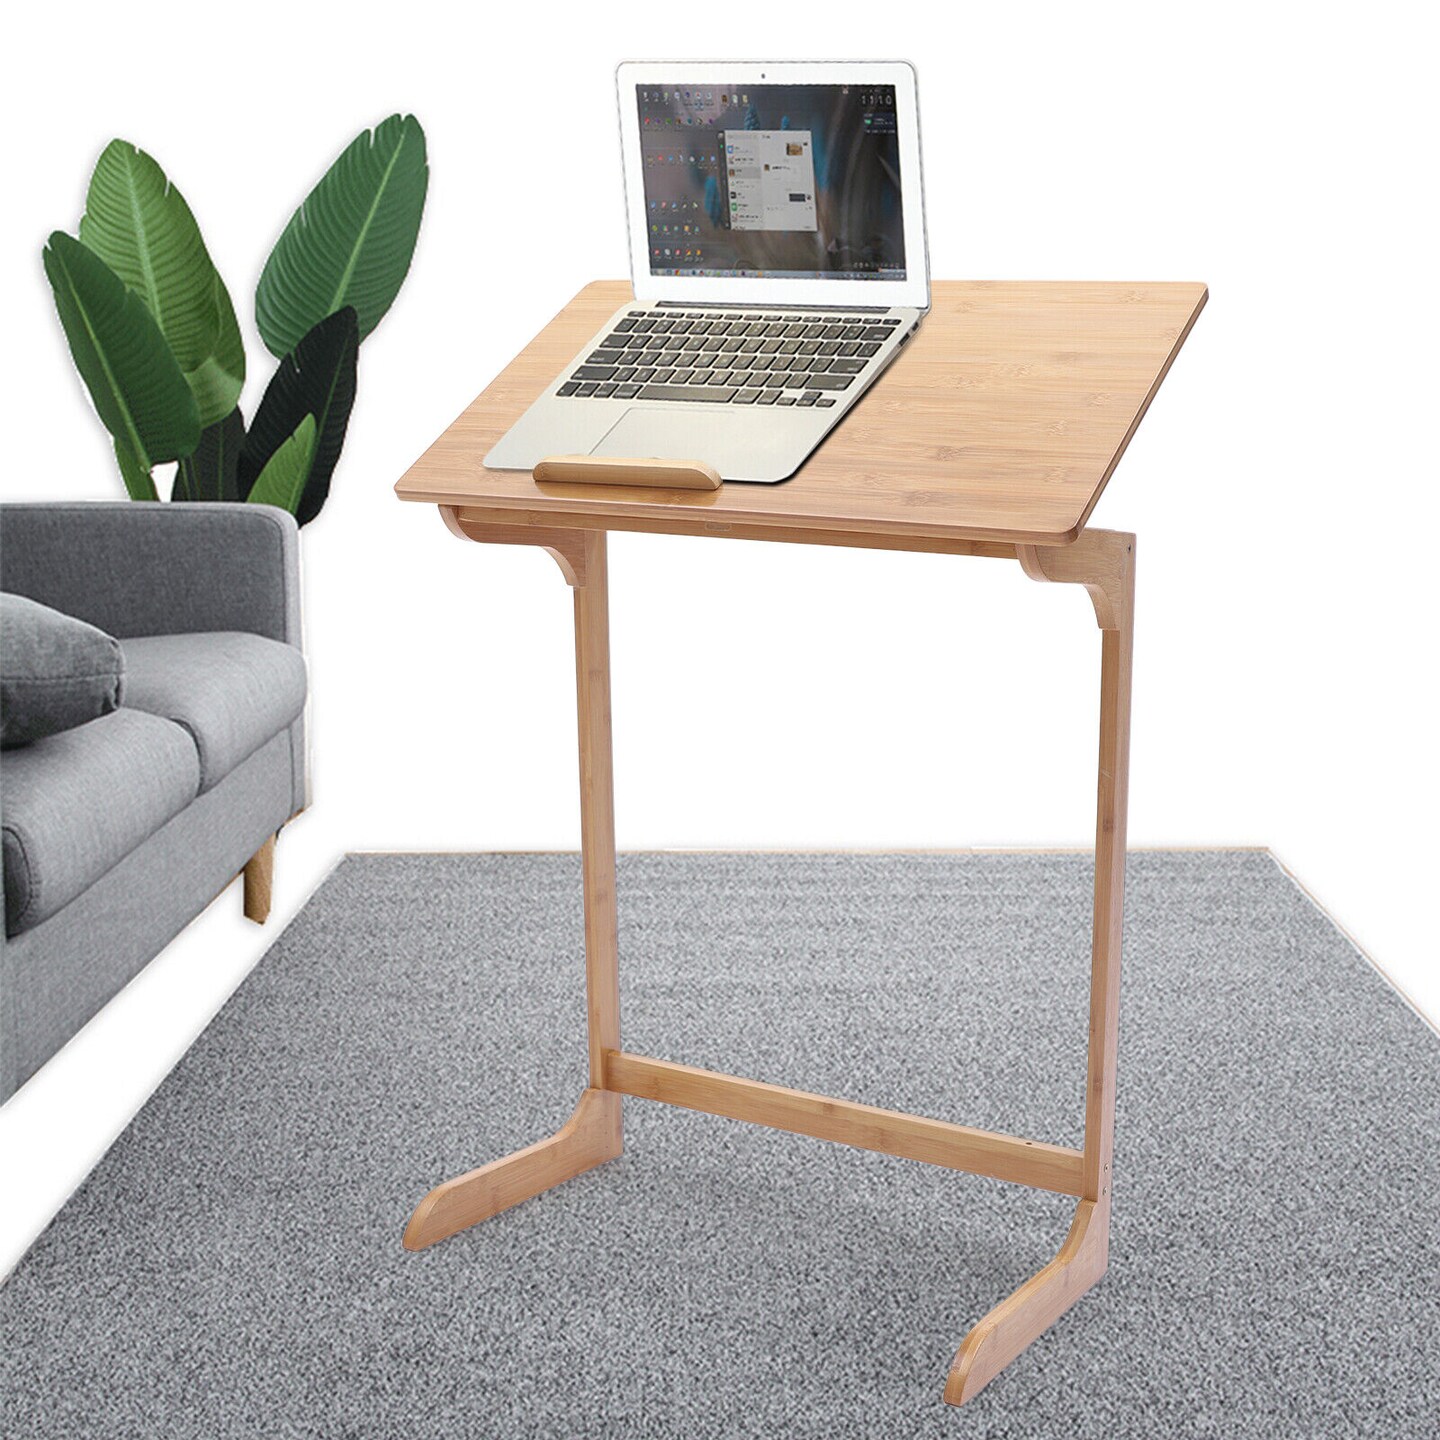 Kitcheniva Adjustable Laptop Desk C Shape Bed Side End Table